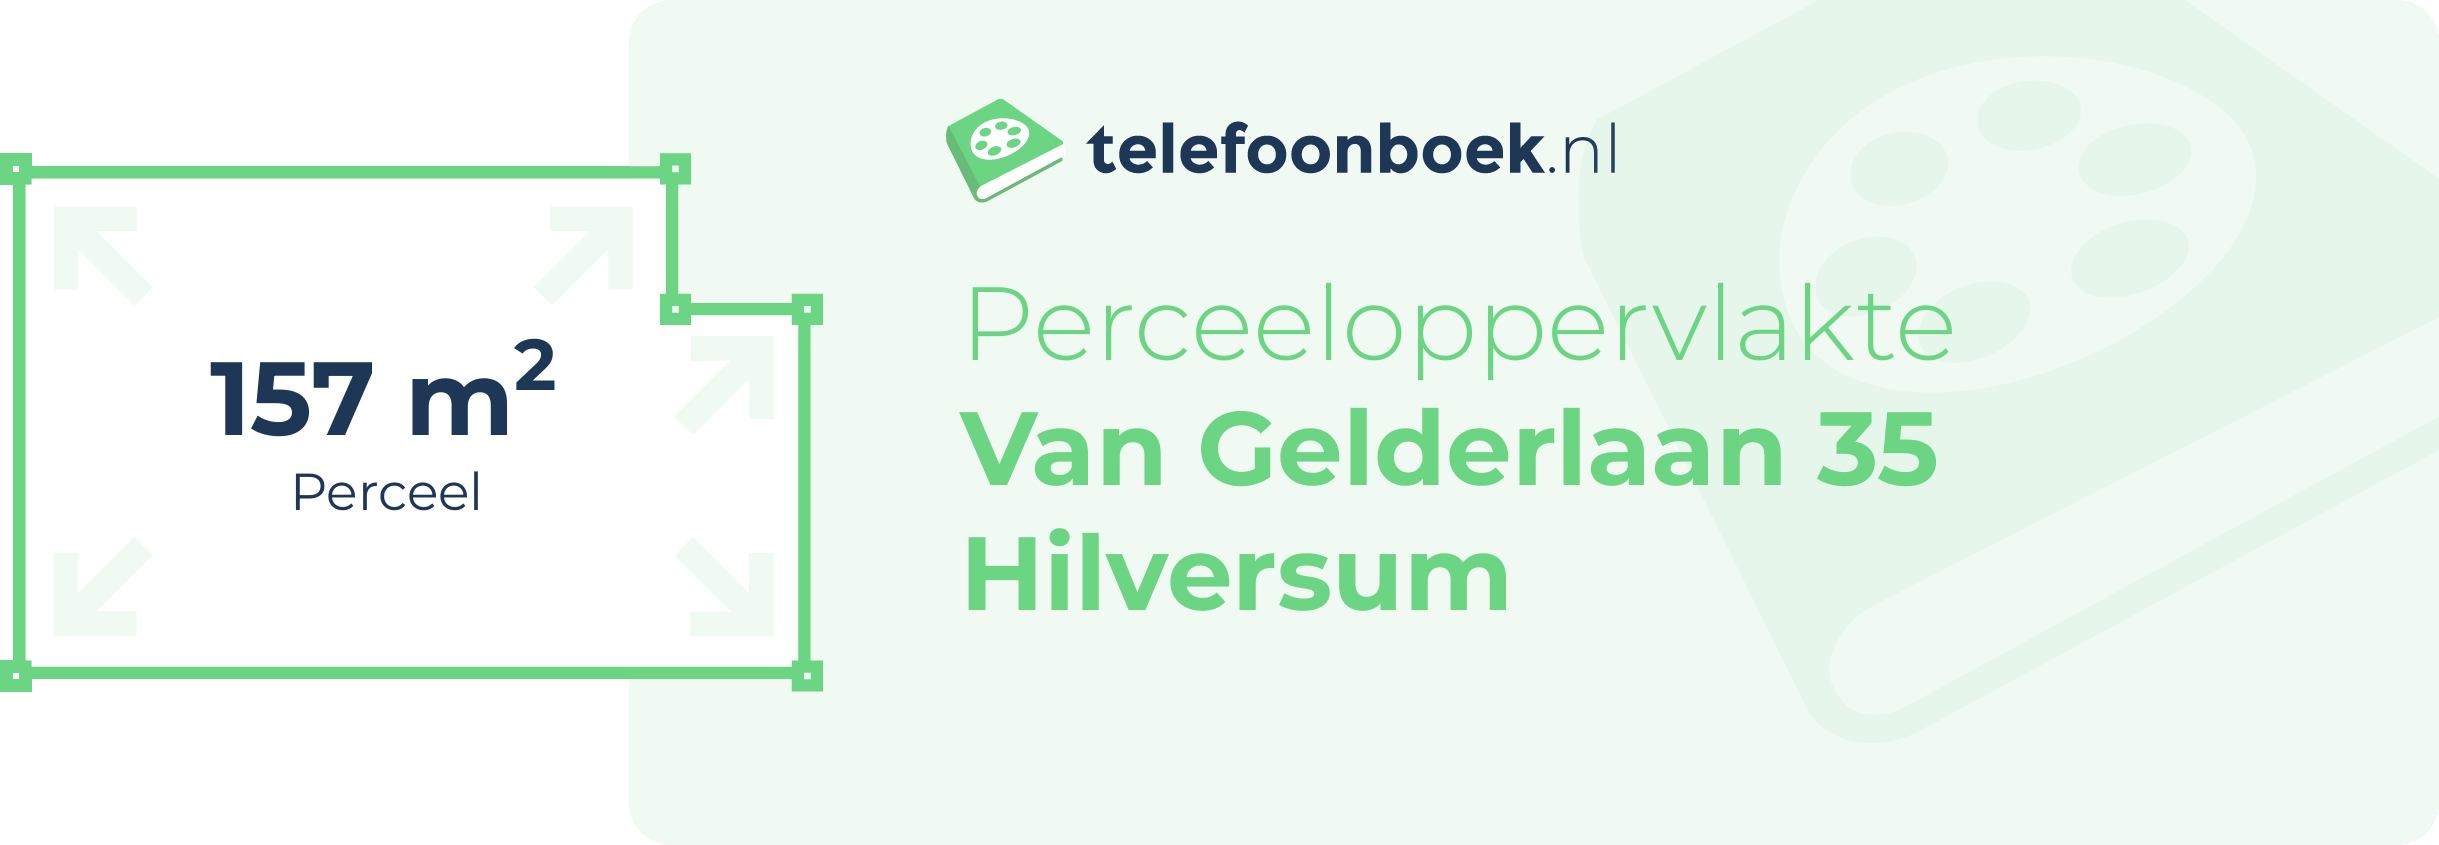 Perceeloppervlakte Van Gelderlaan 35 Hilversum